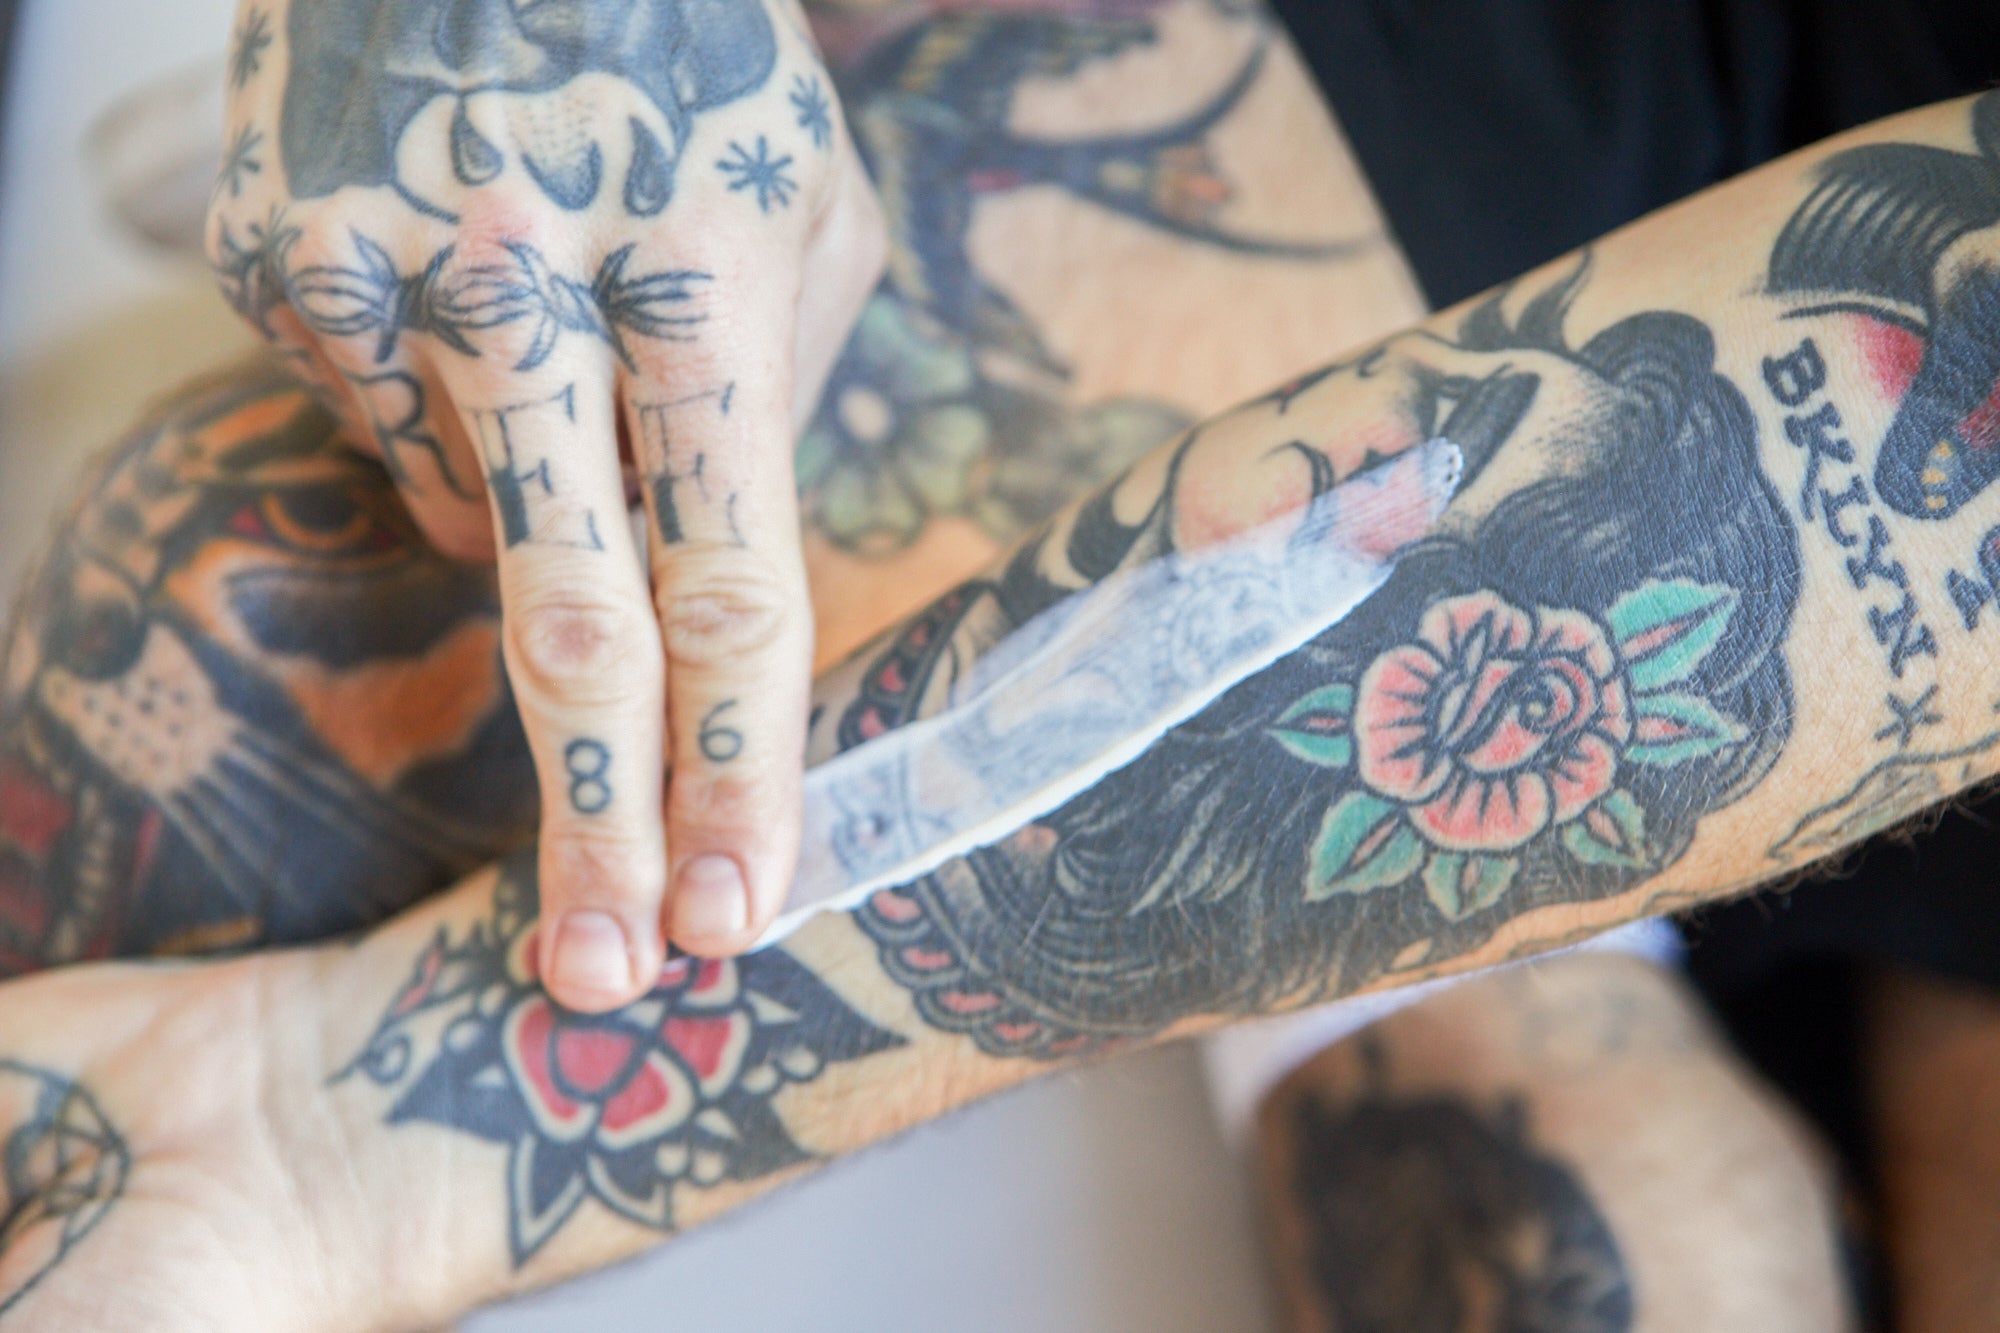 How quickly do tattoos fade